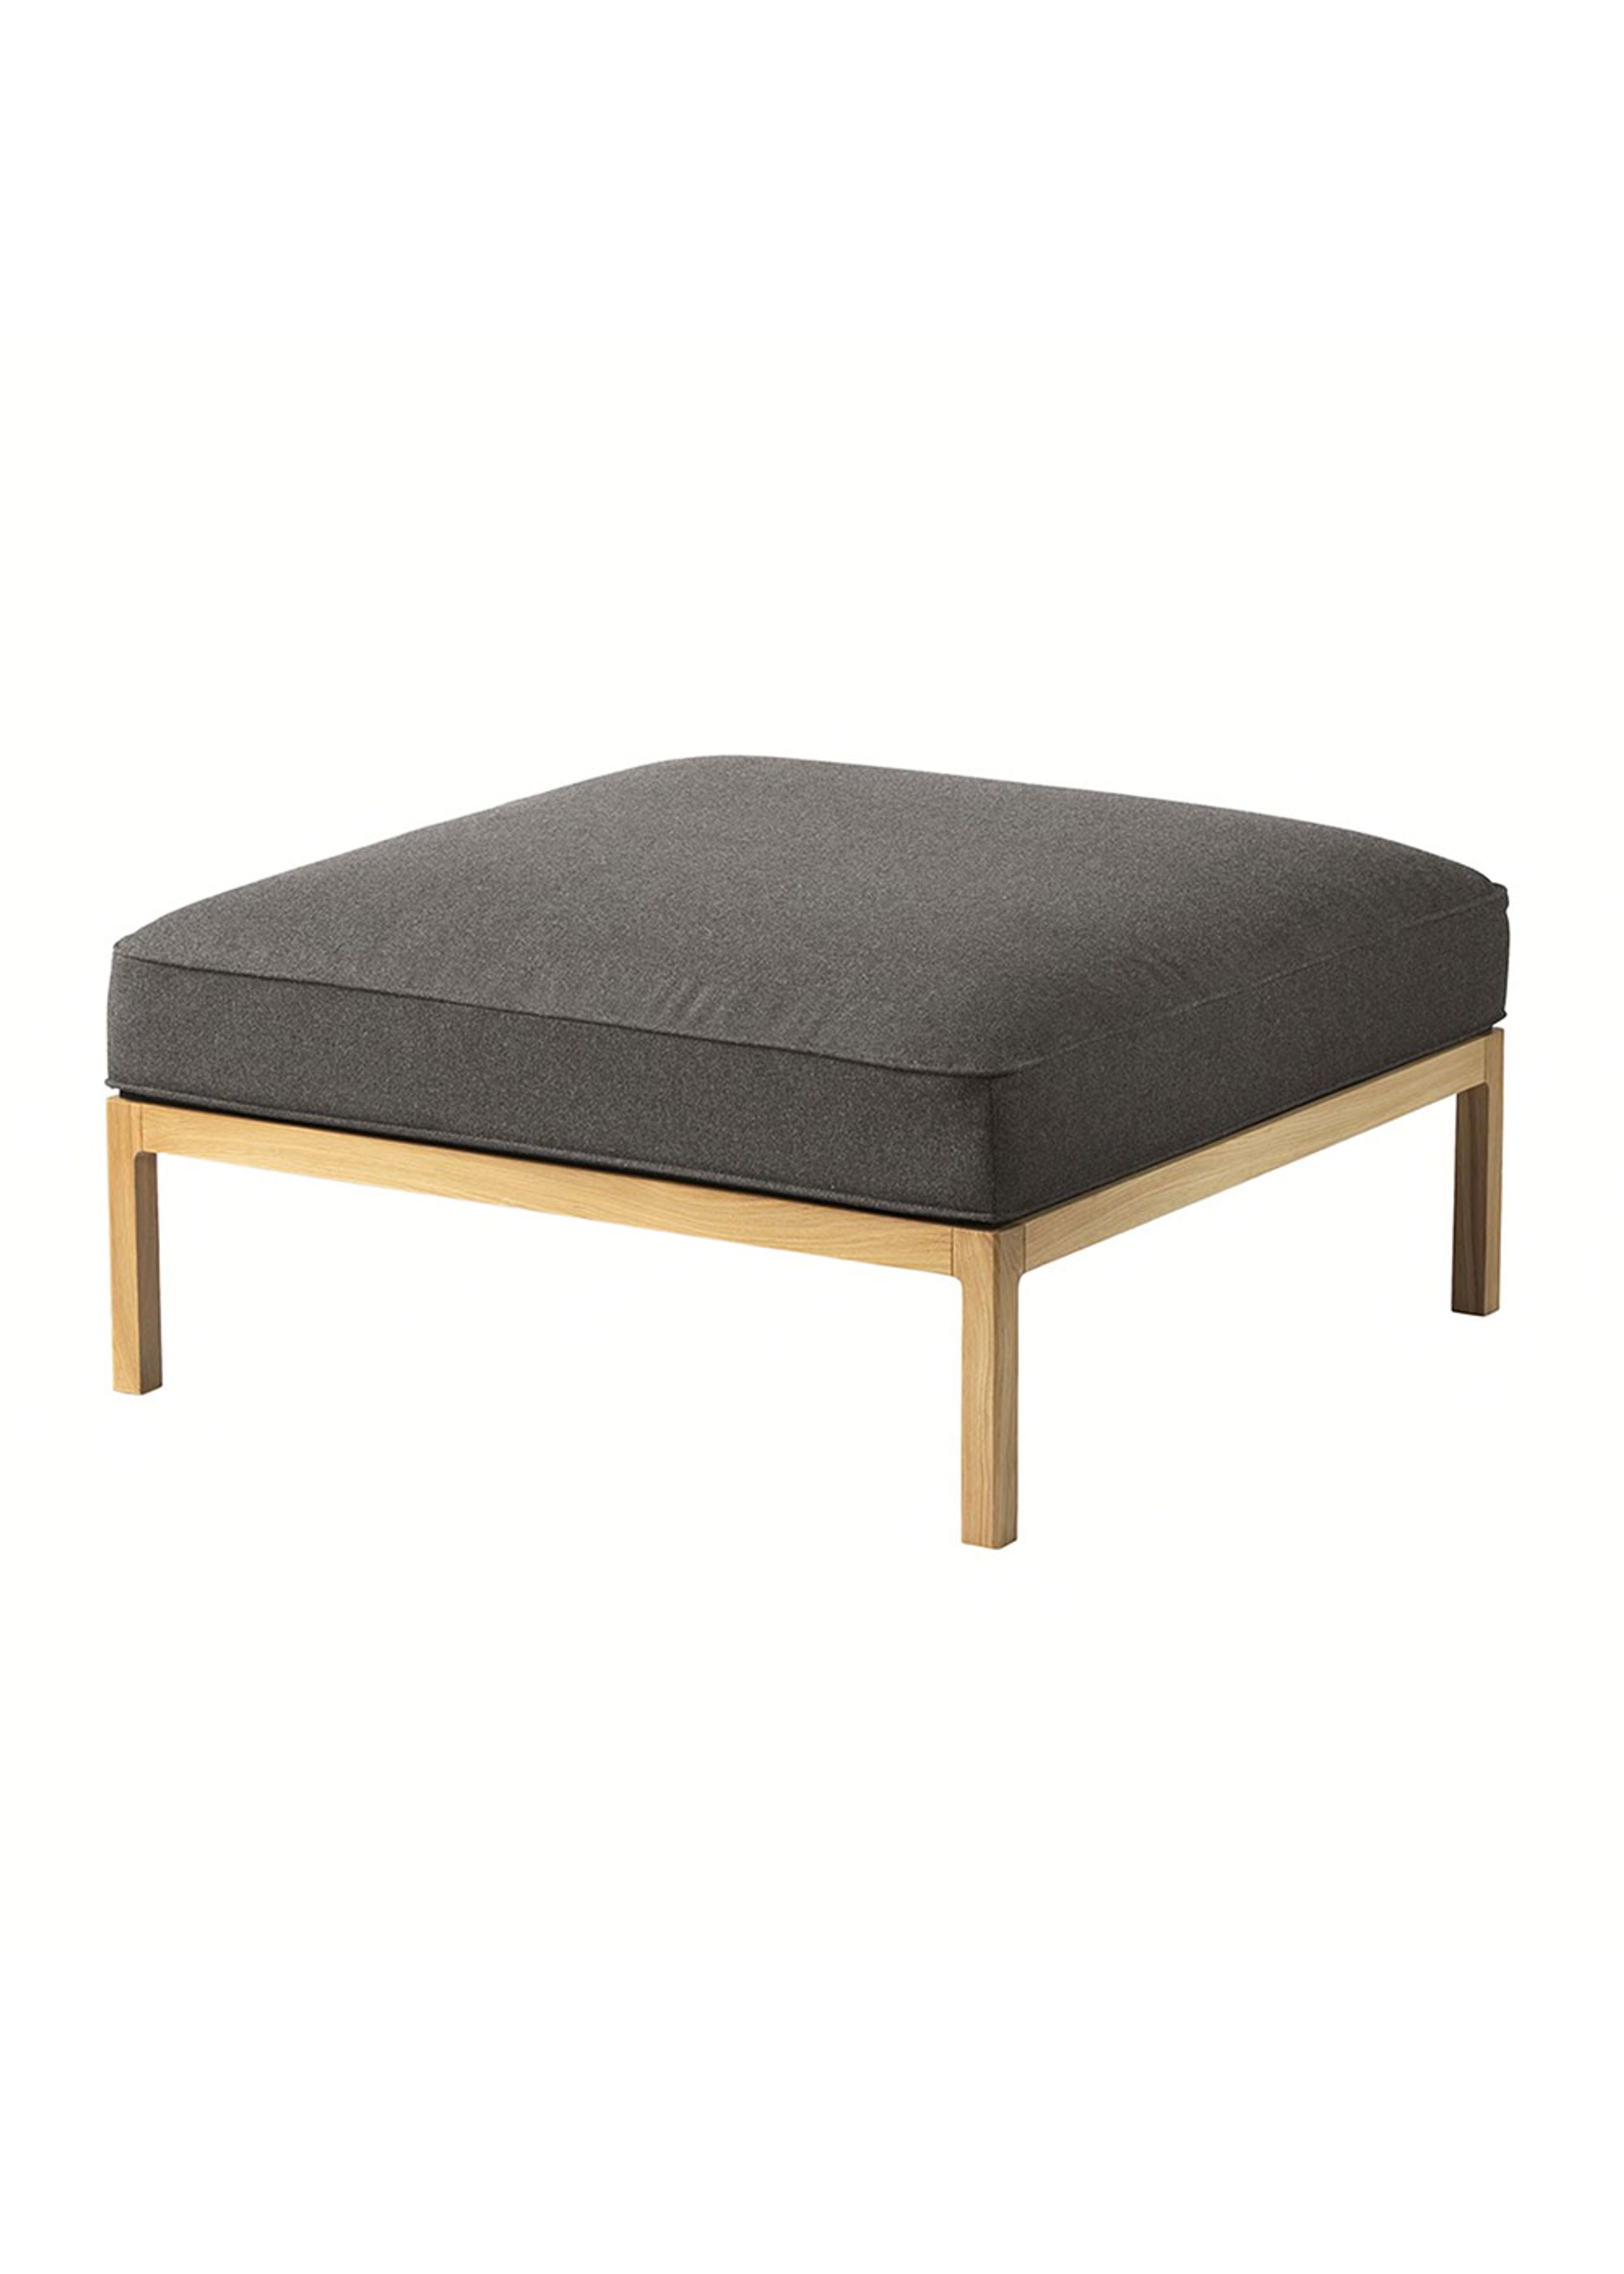 FDB Møbler / Furniture - Puff - L37, 7-9-13, Puff - Onxy